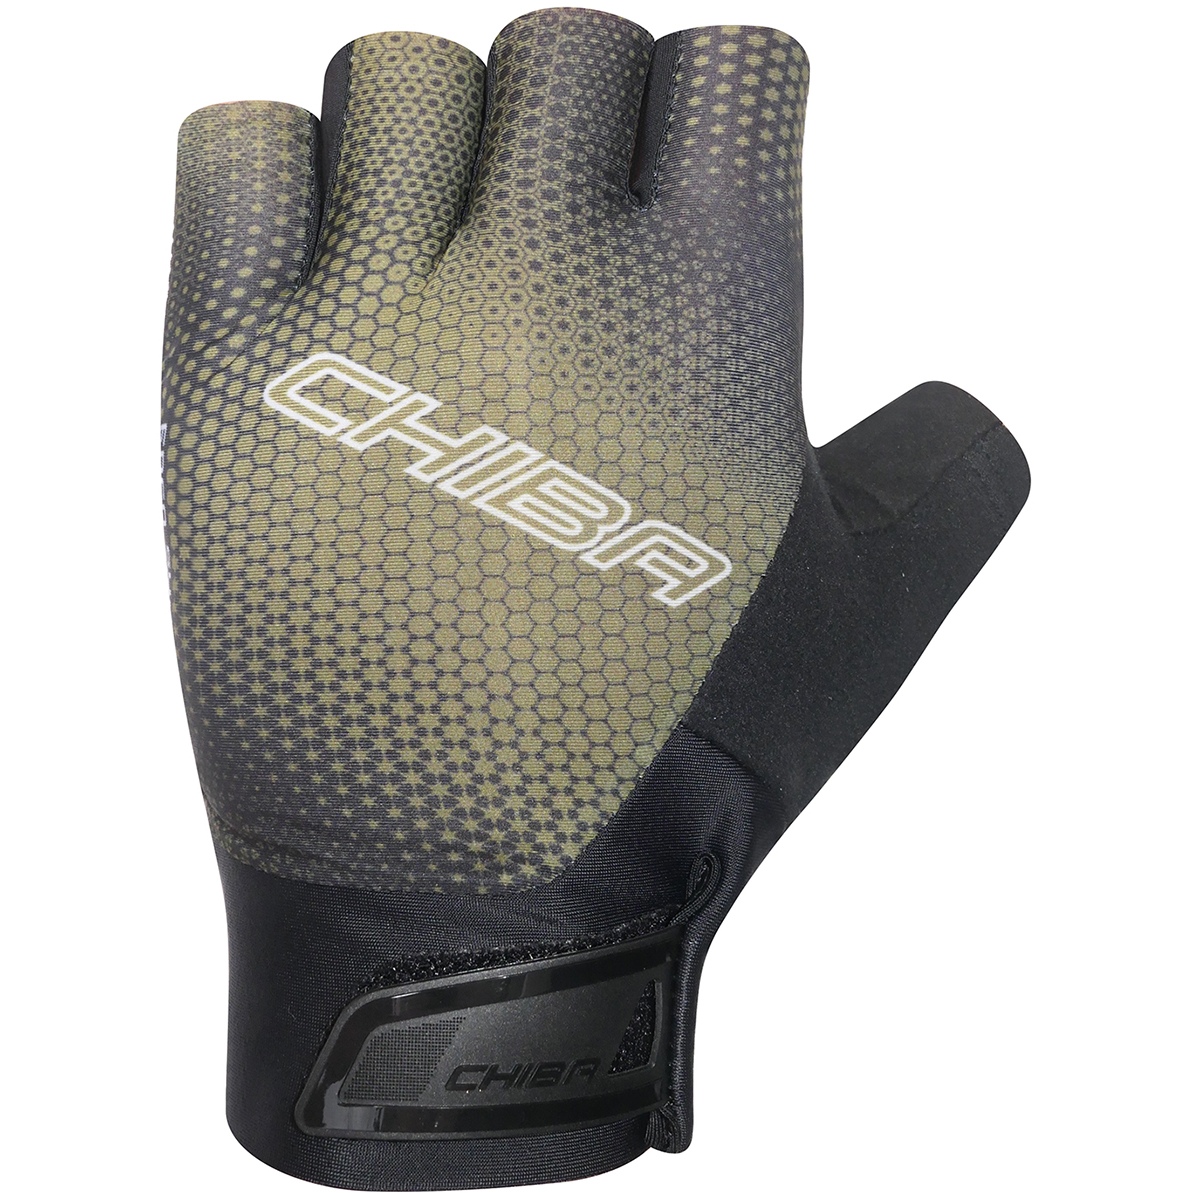 Produktbild von Chiba Ergo Superlight Kurzfinger-Handschuhe - olive